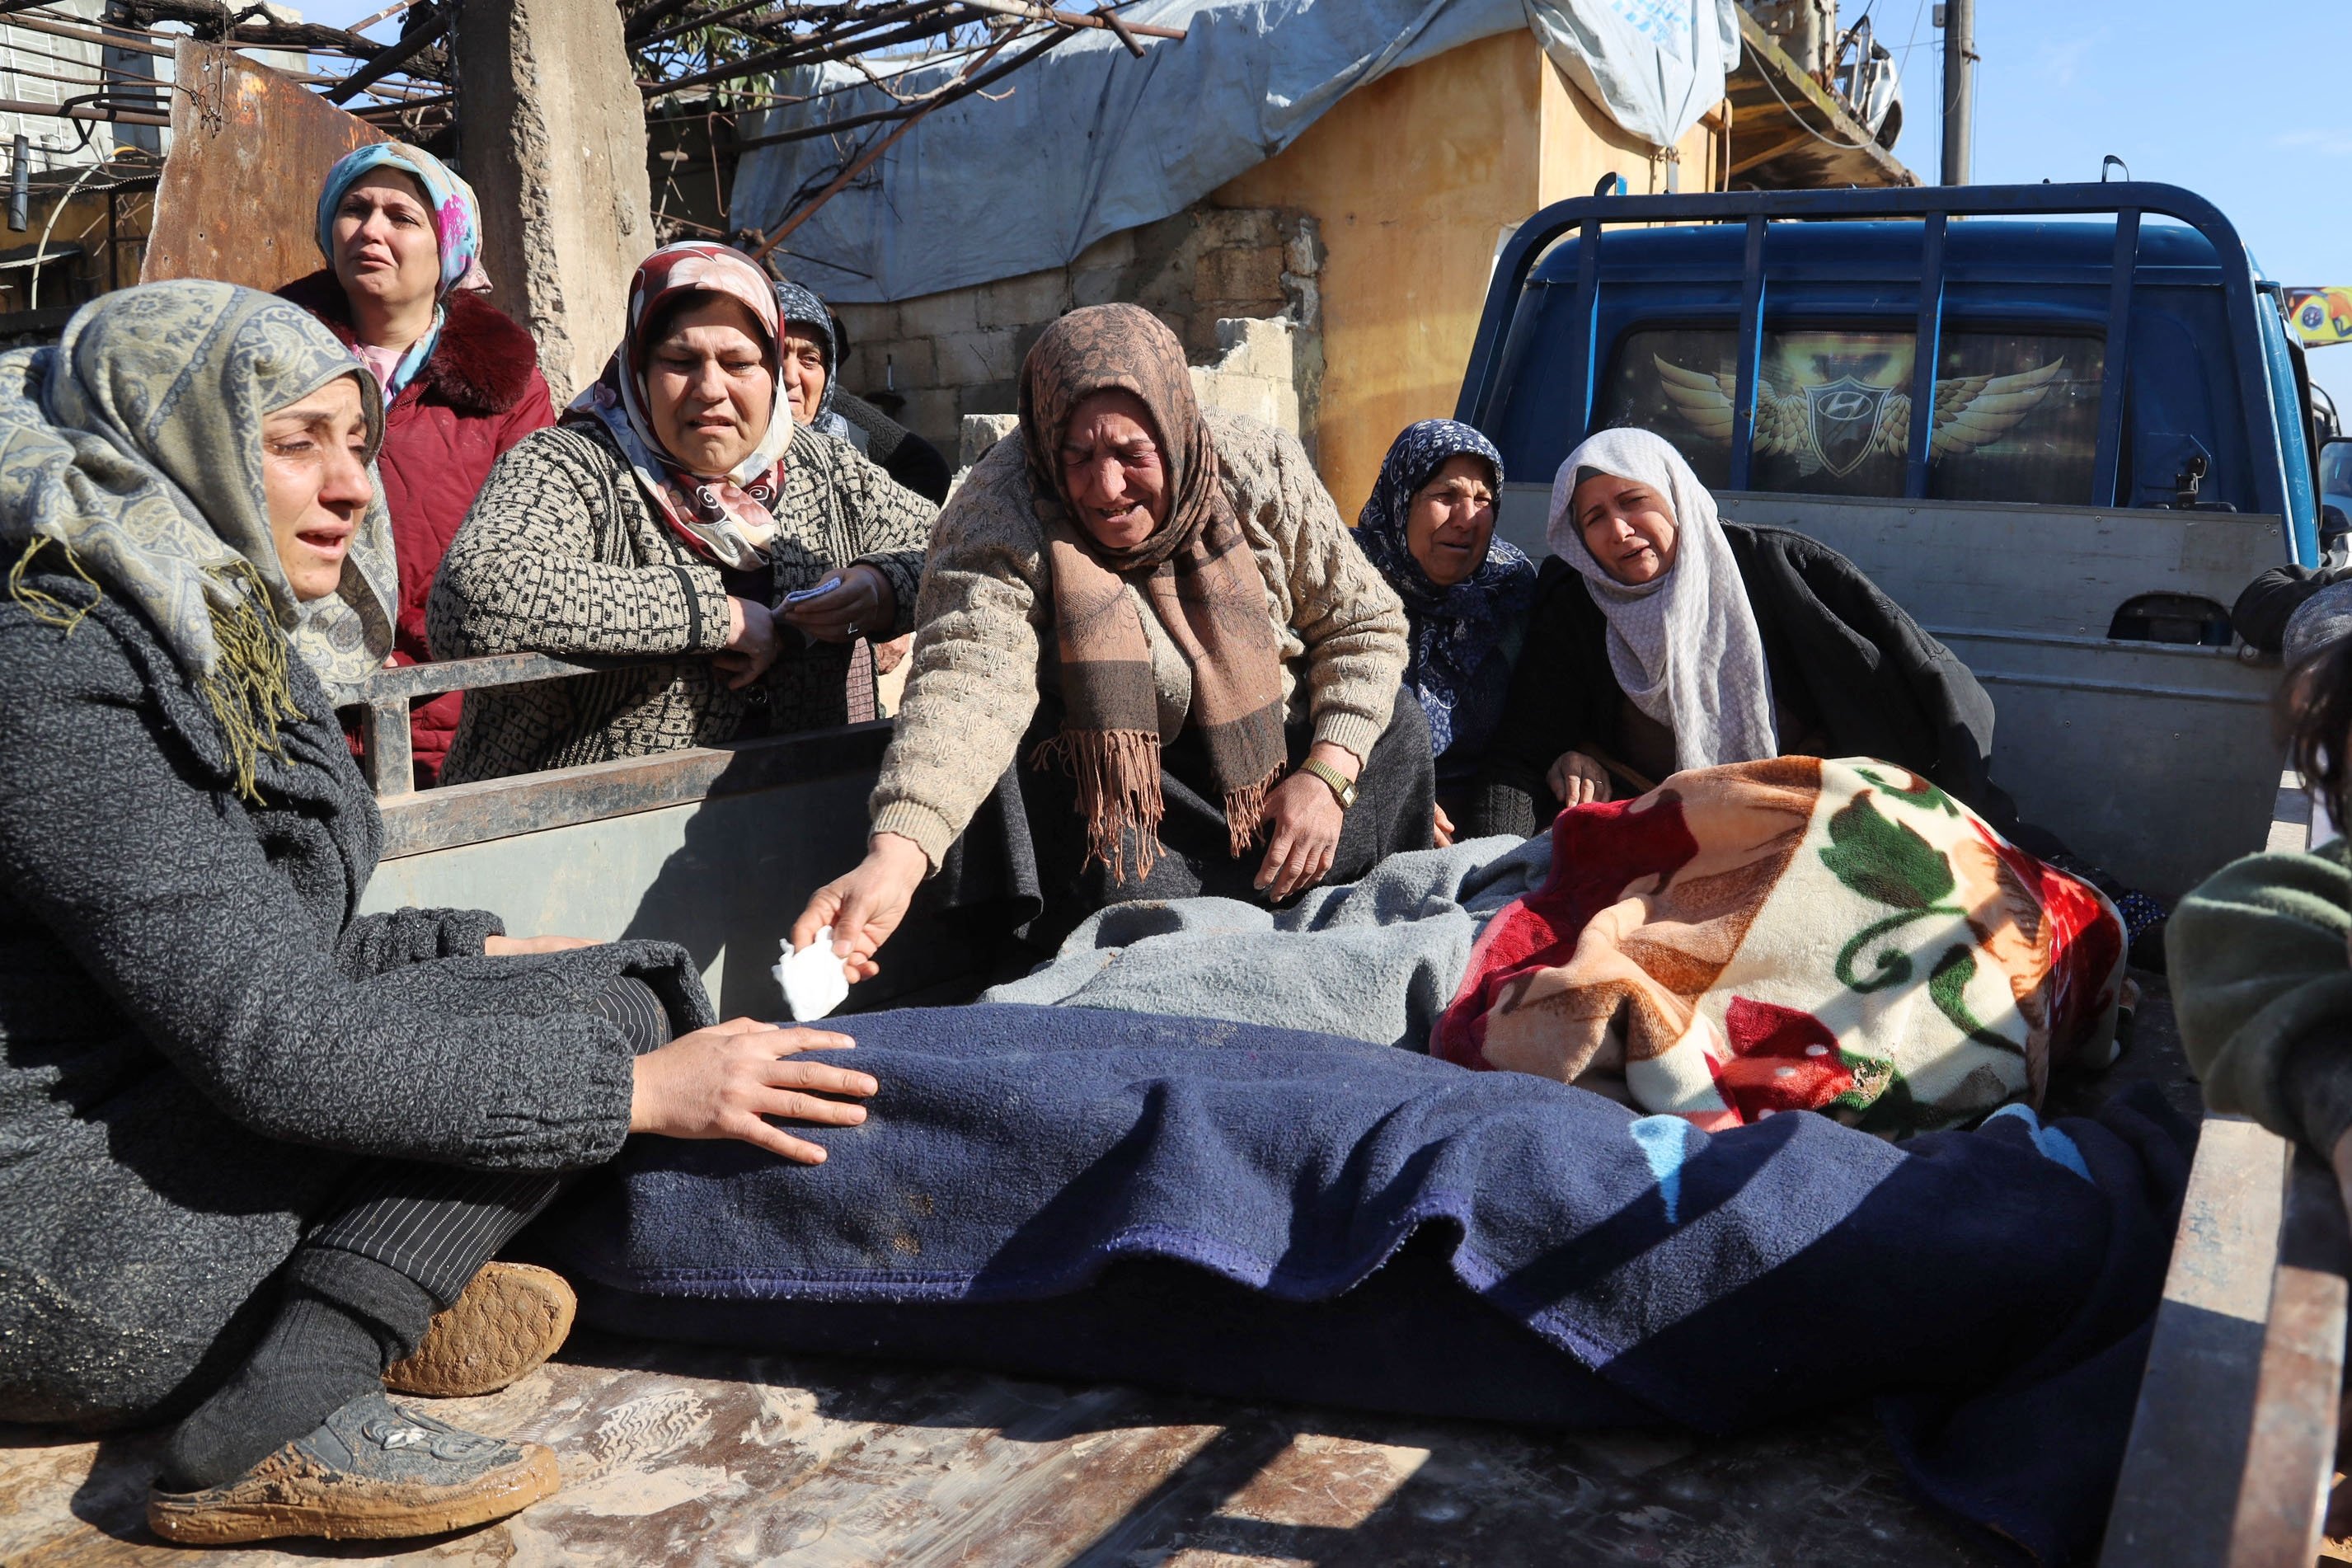 Wanita Suriah menangis di samping mayat yang tergeletak di belakang truk, Jandaris, Suriah, 7 Februari 2023. (Foto AFP)